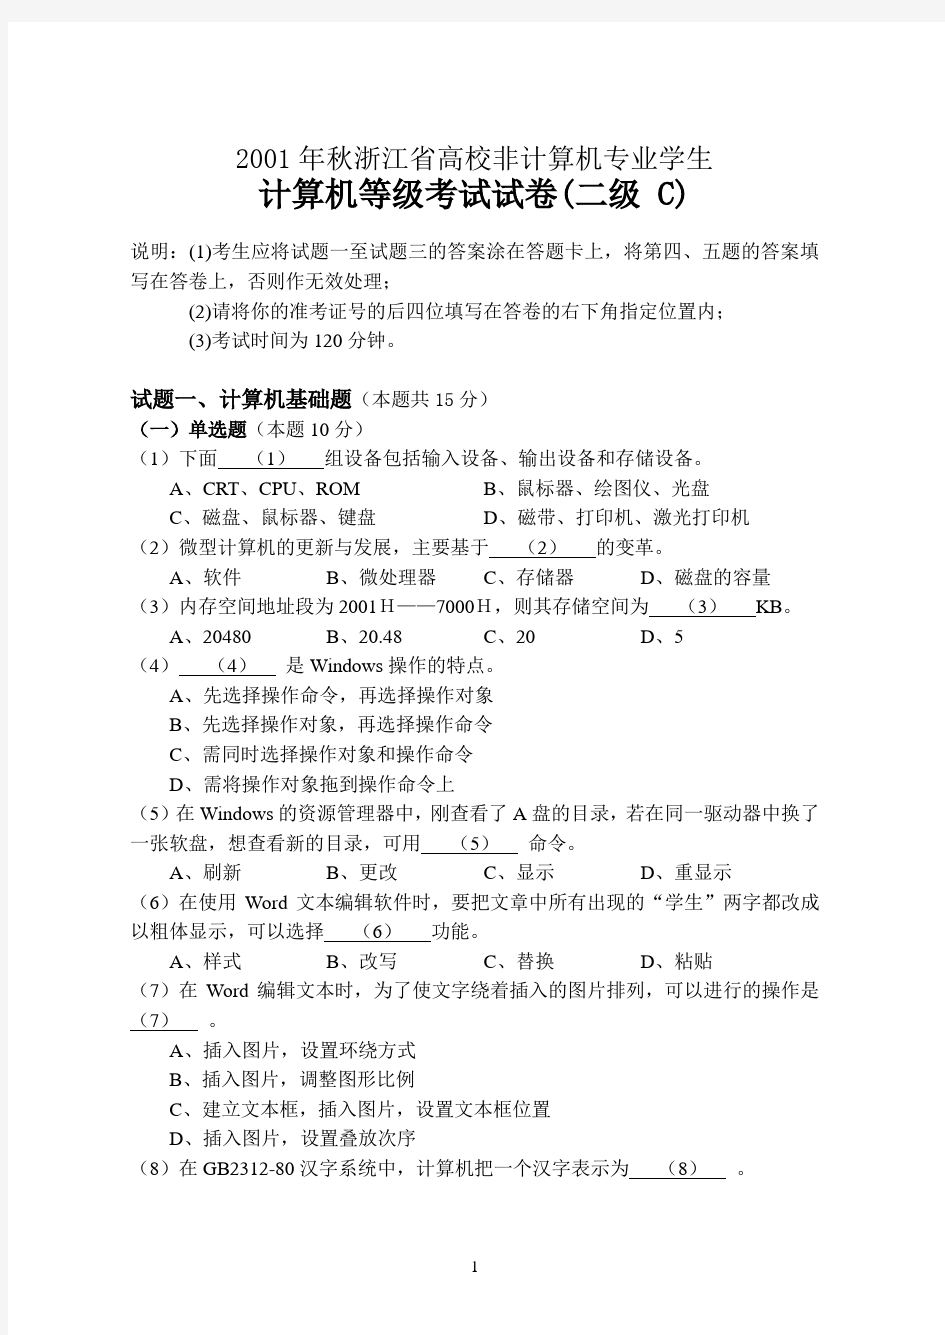 2001年秋浙江省高校计算机等级考试试卷 (二级C)及答案